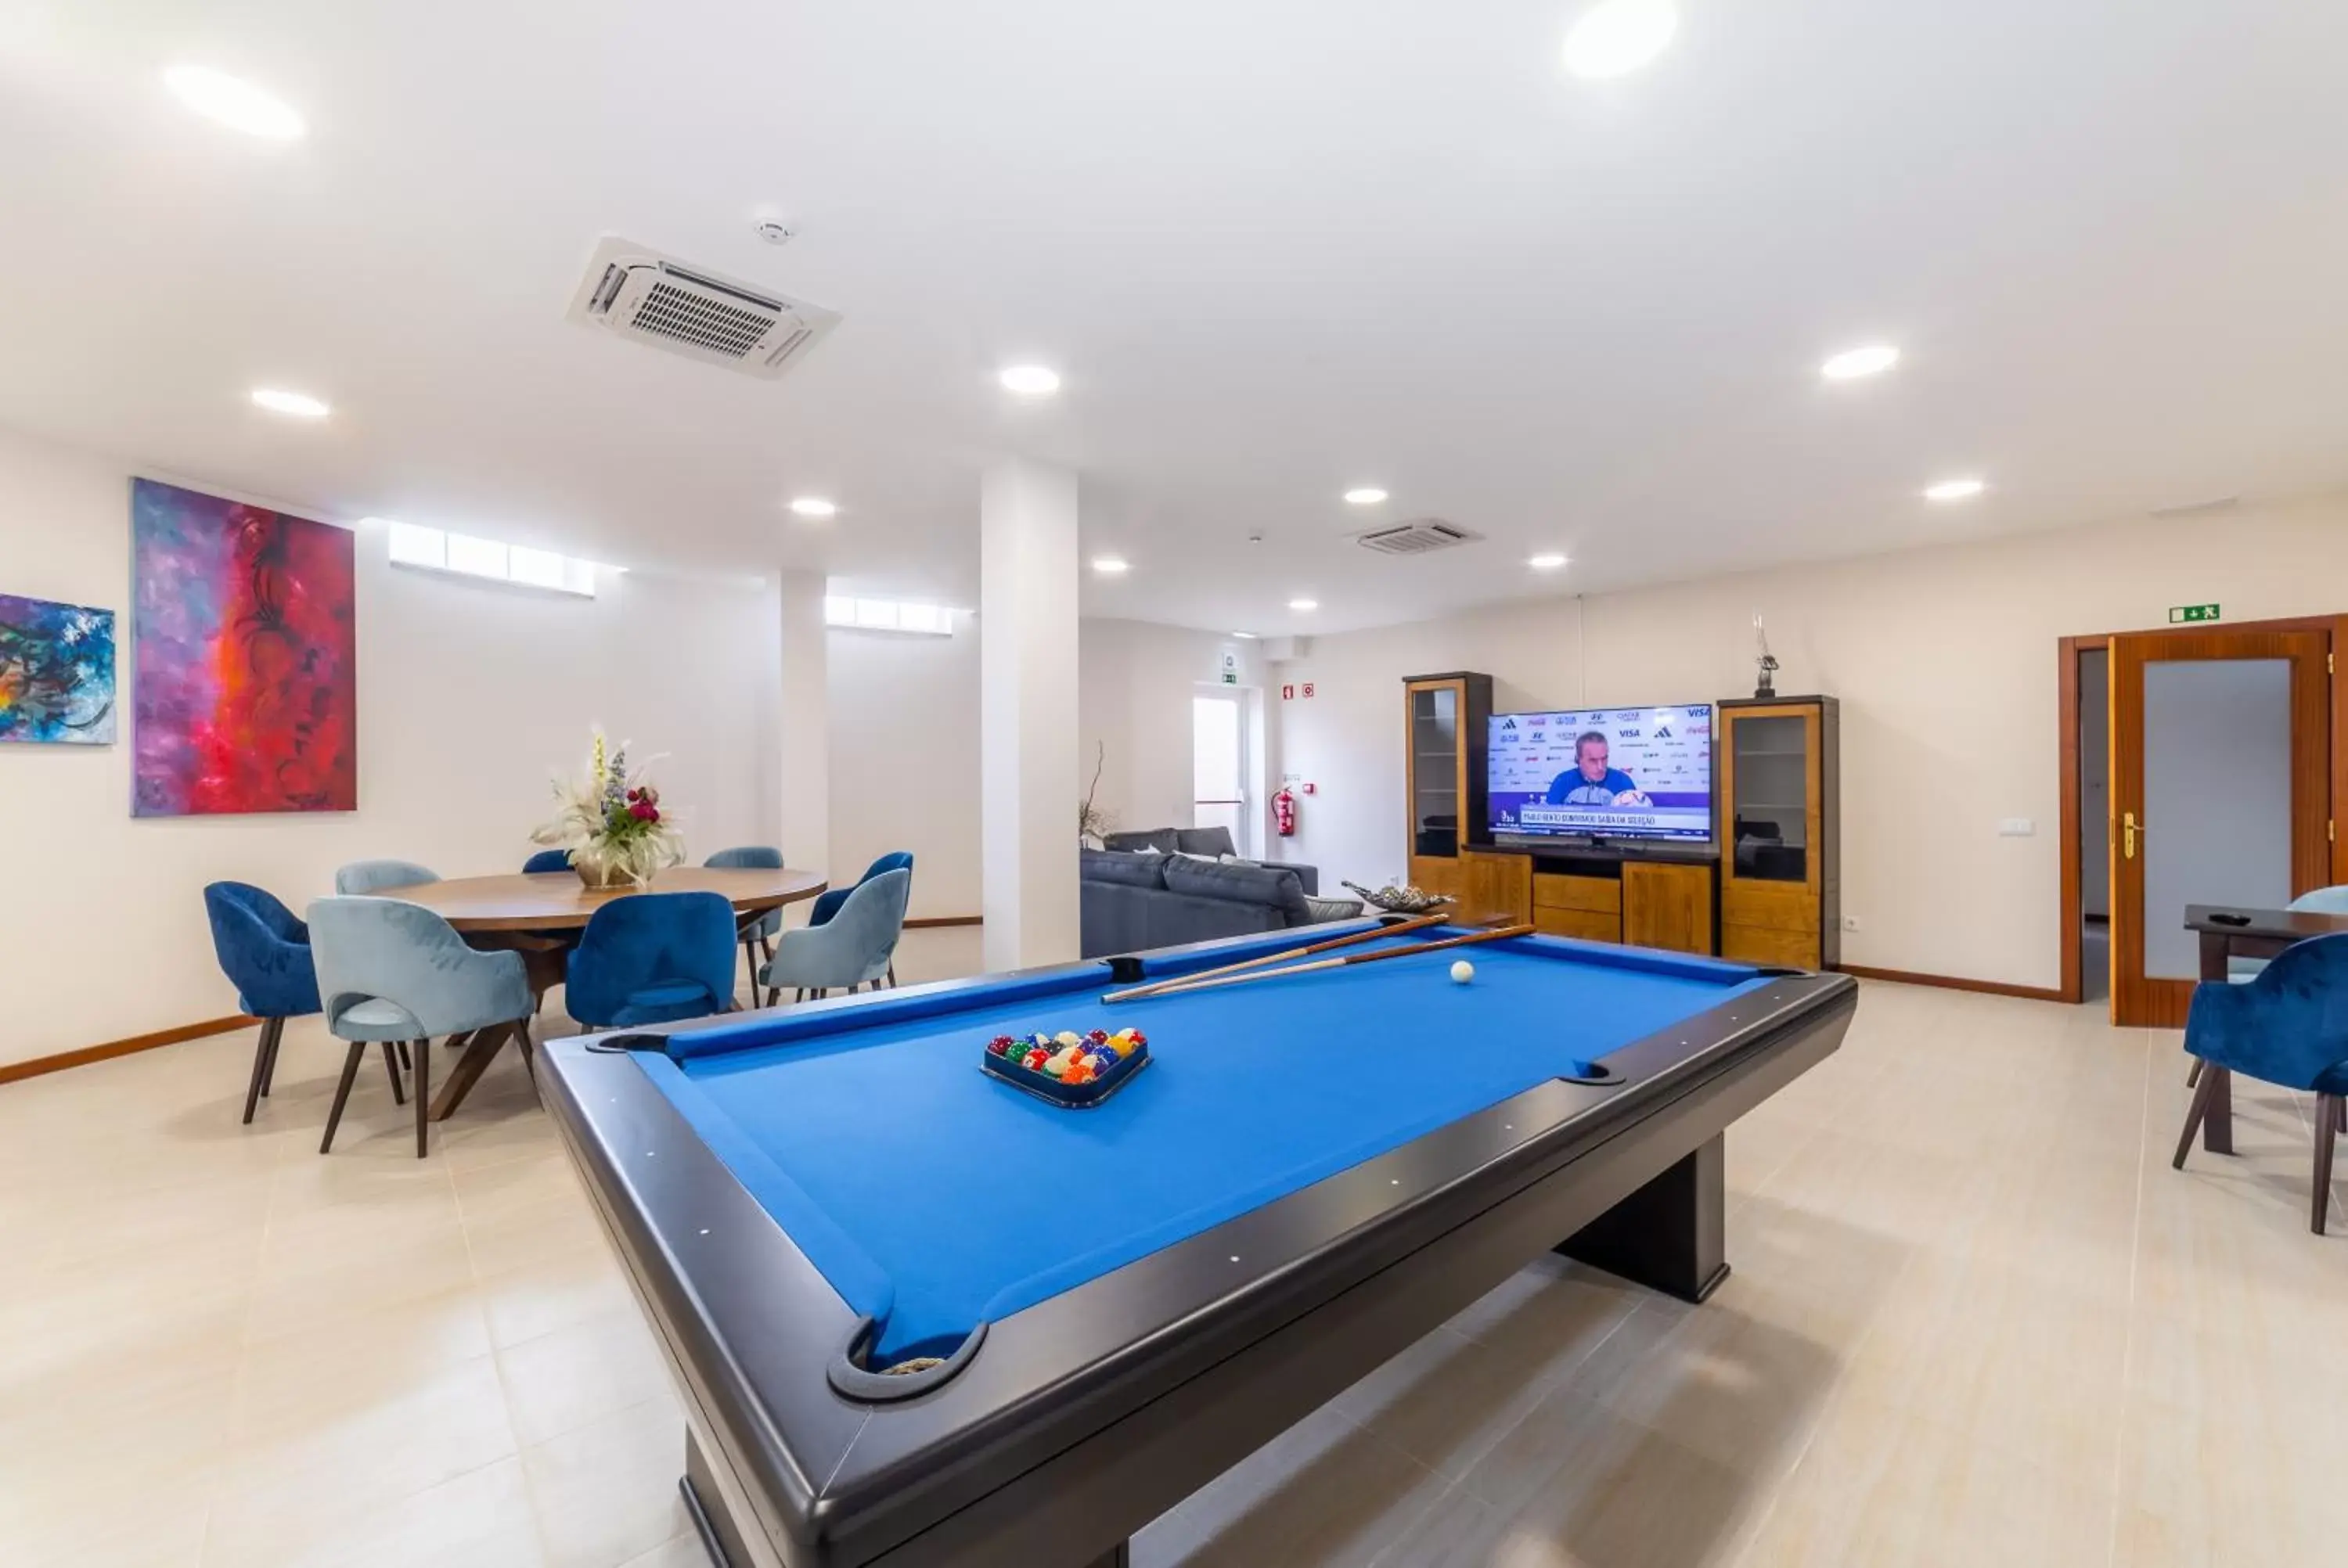 Game Room, Billiards in Boa Vida Alojamentos